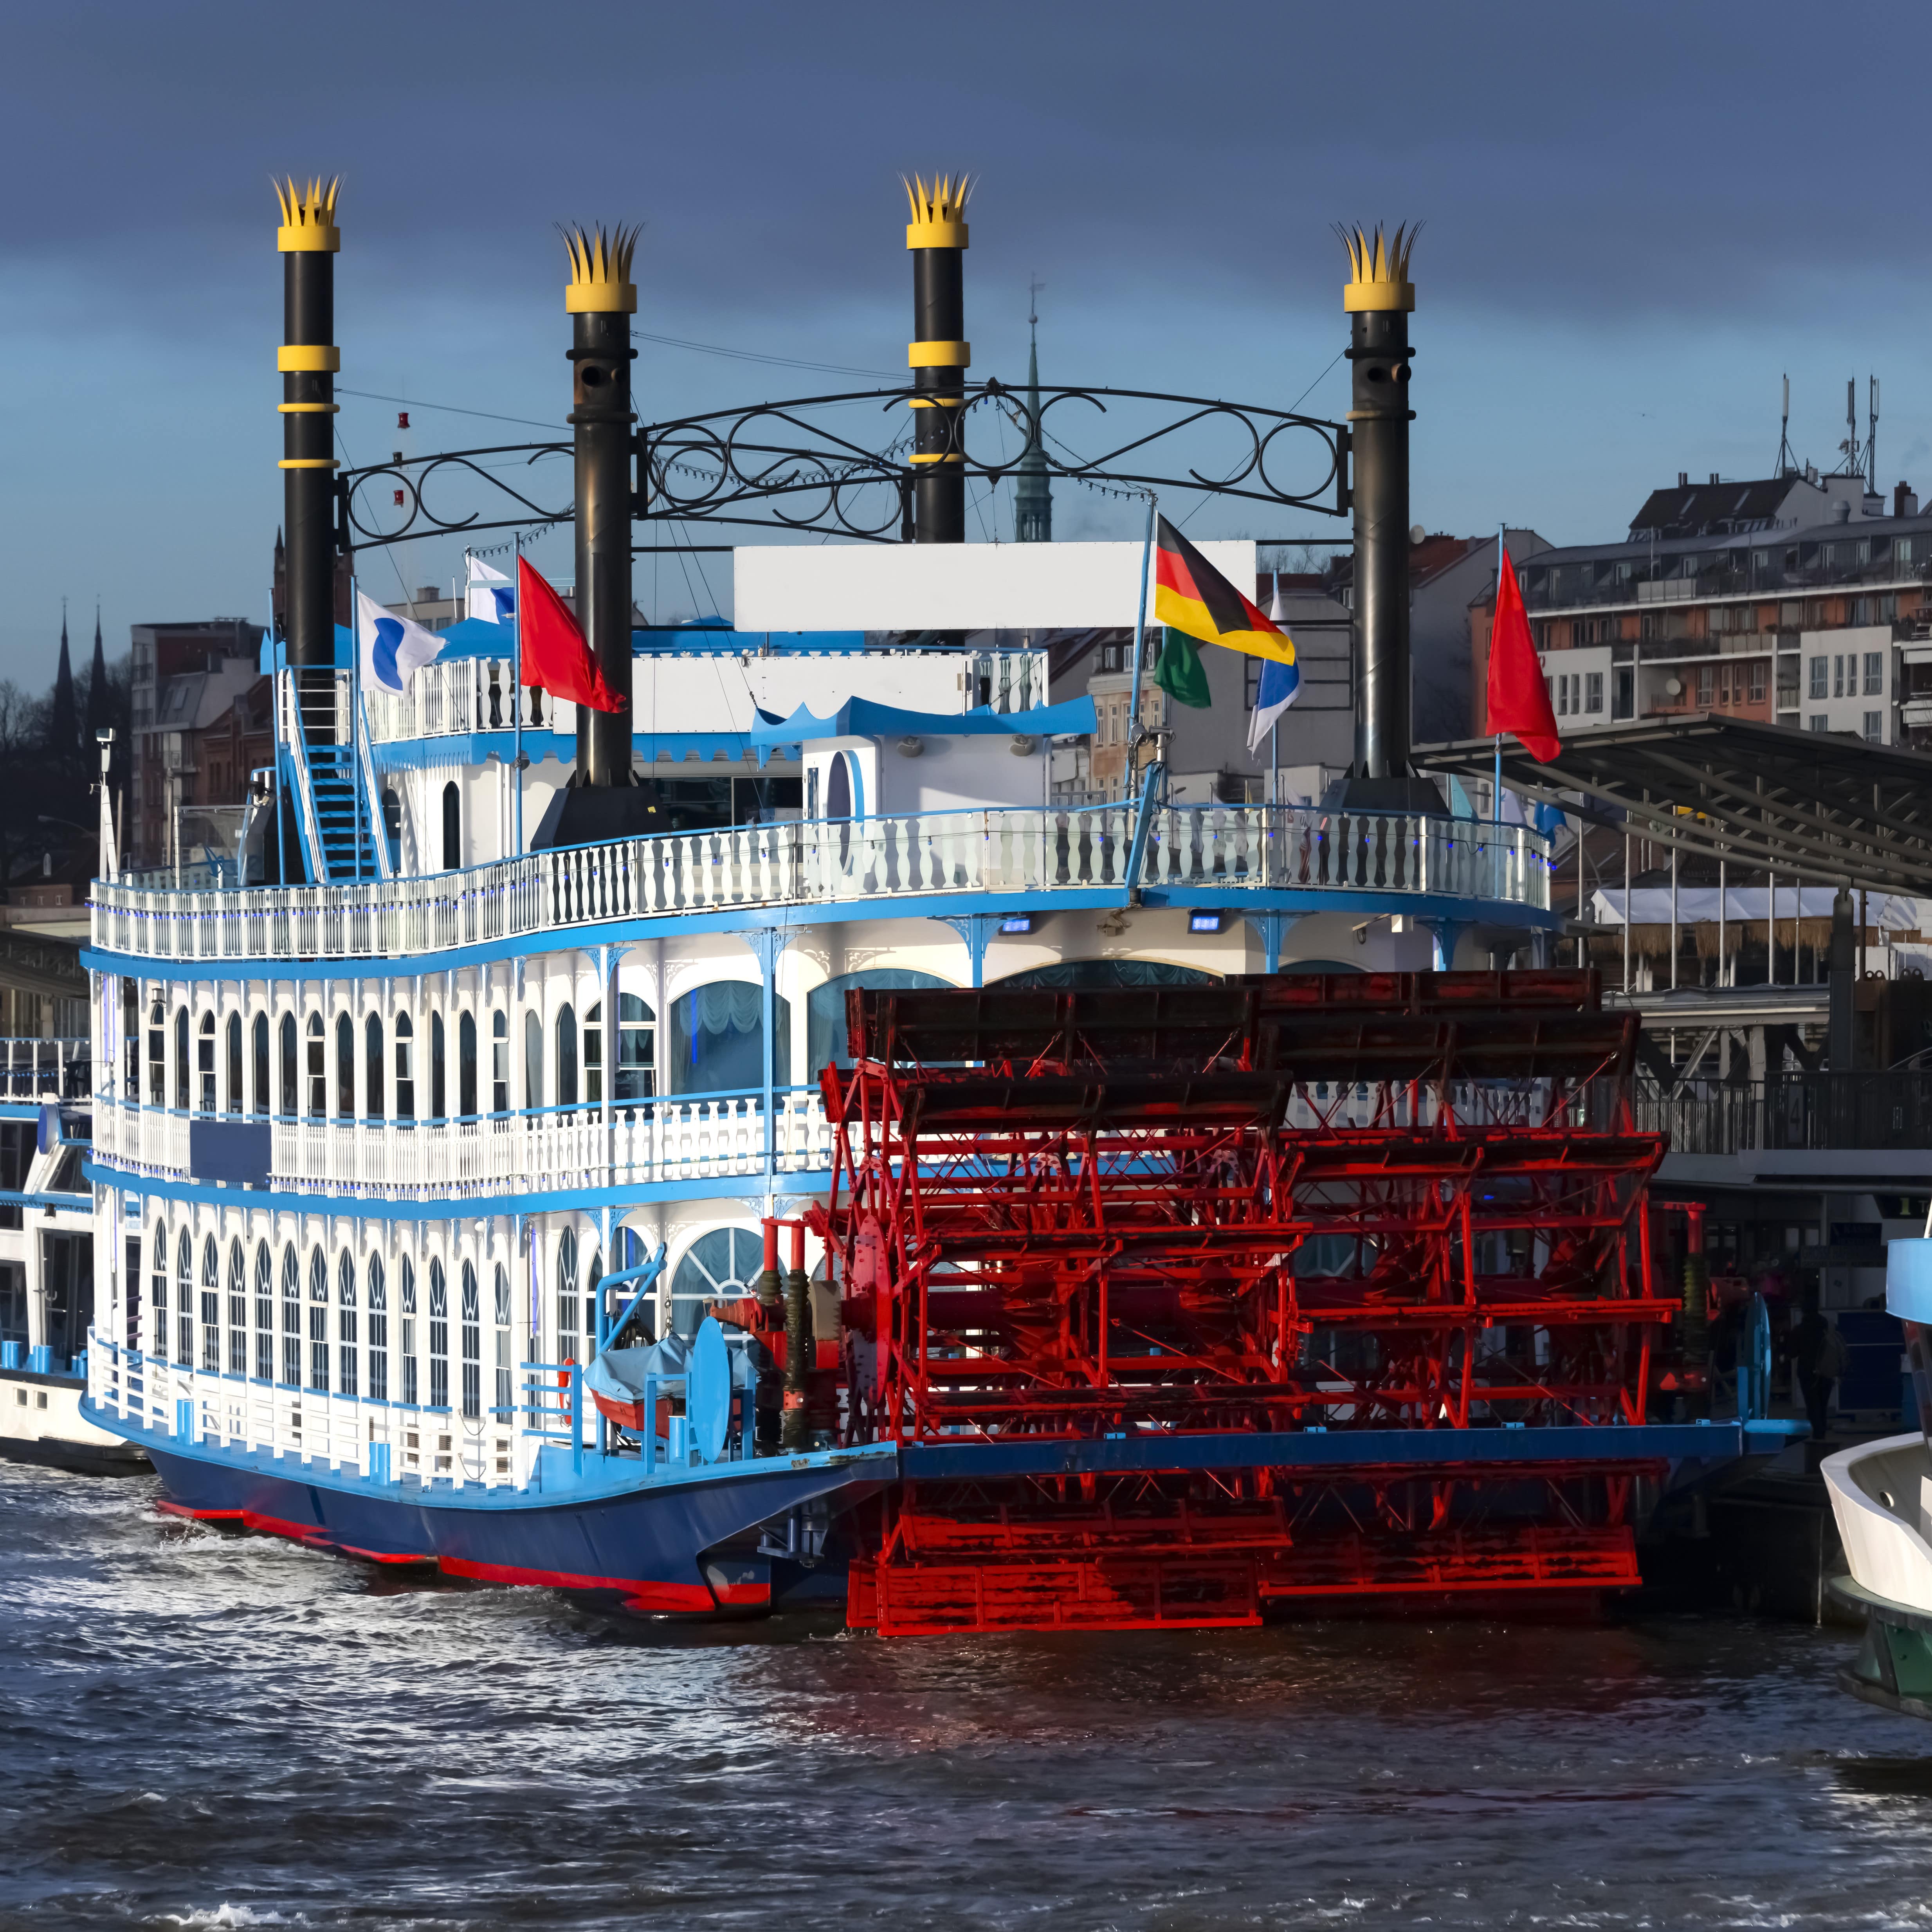 Ein blau-weiß-roter Raddampfer im Hafen von Hamburg. Oben ragen 4 Schornsteine mit gelben Kronen hoch.